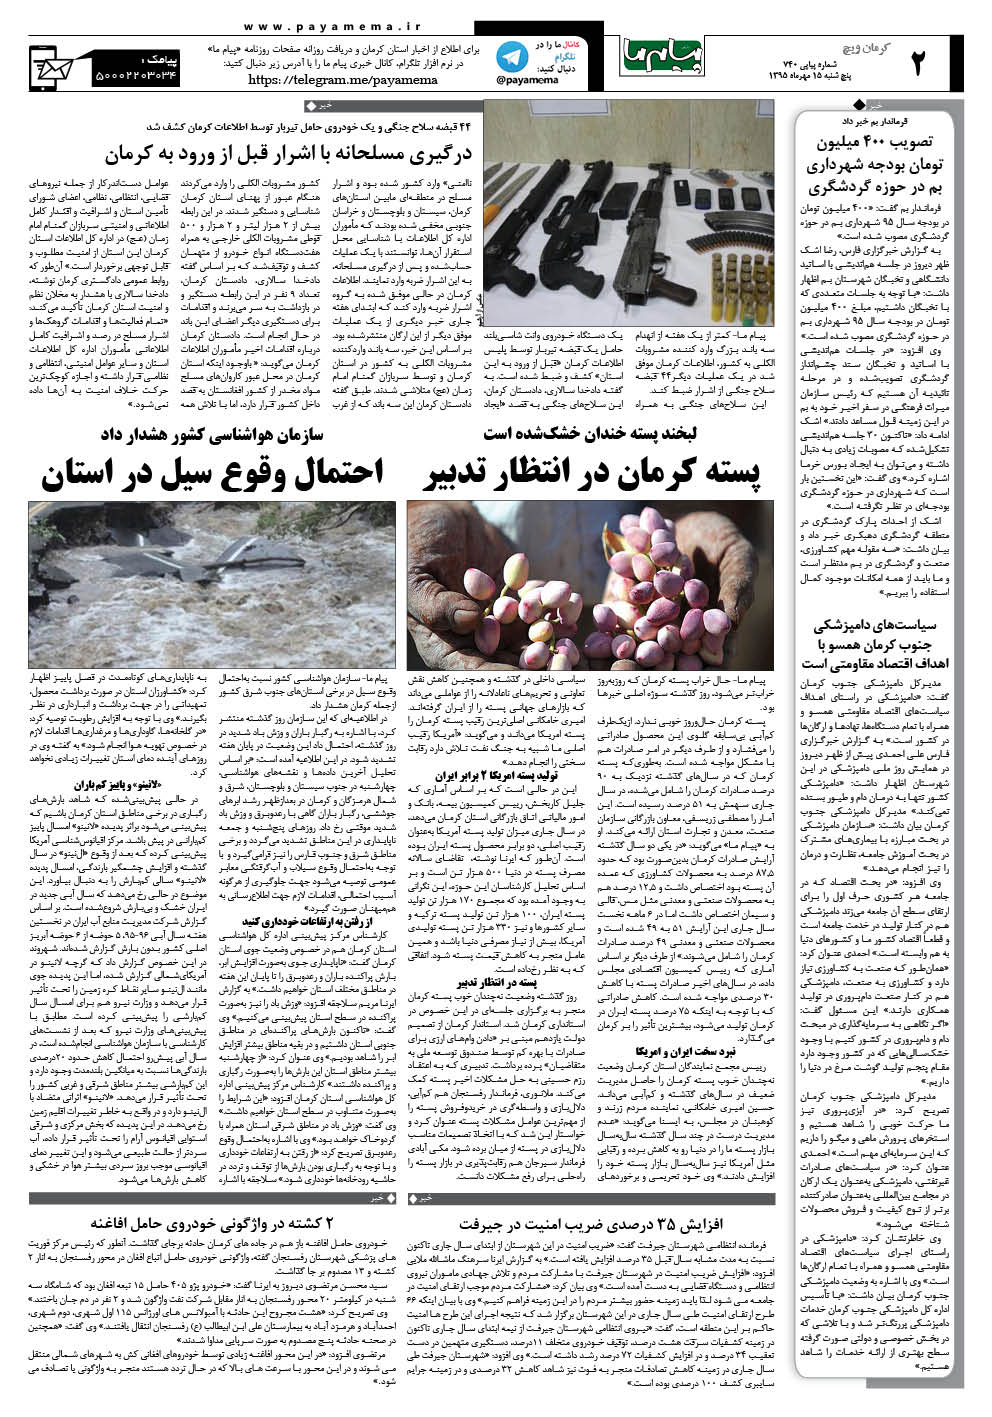 صفحه کرمان ویج شماره 740 روزنامه پیام ما